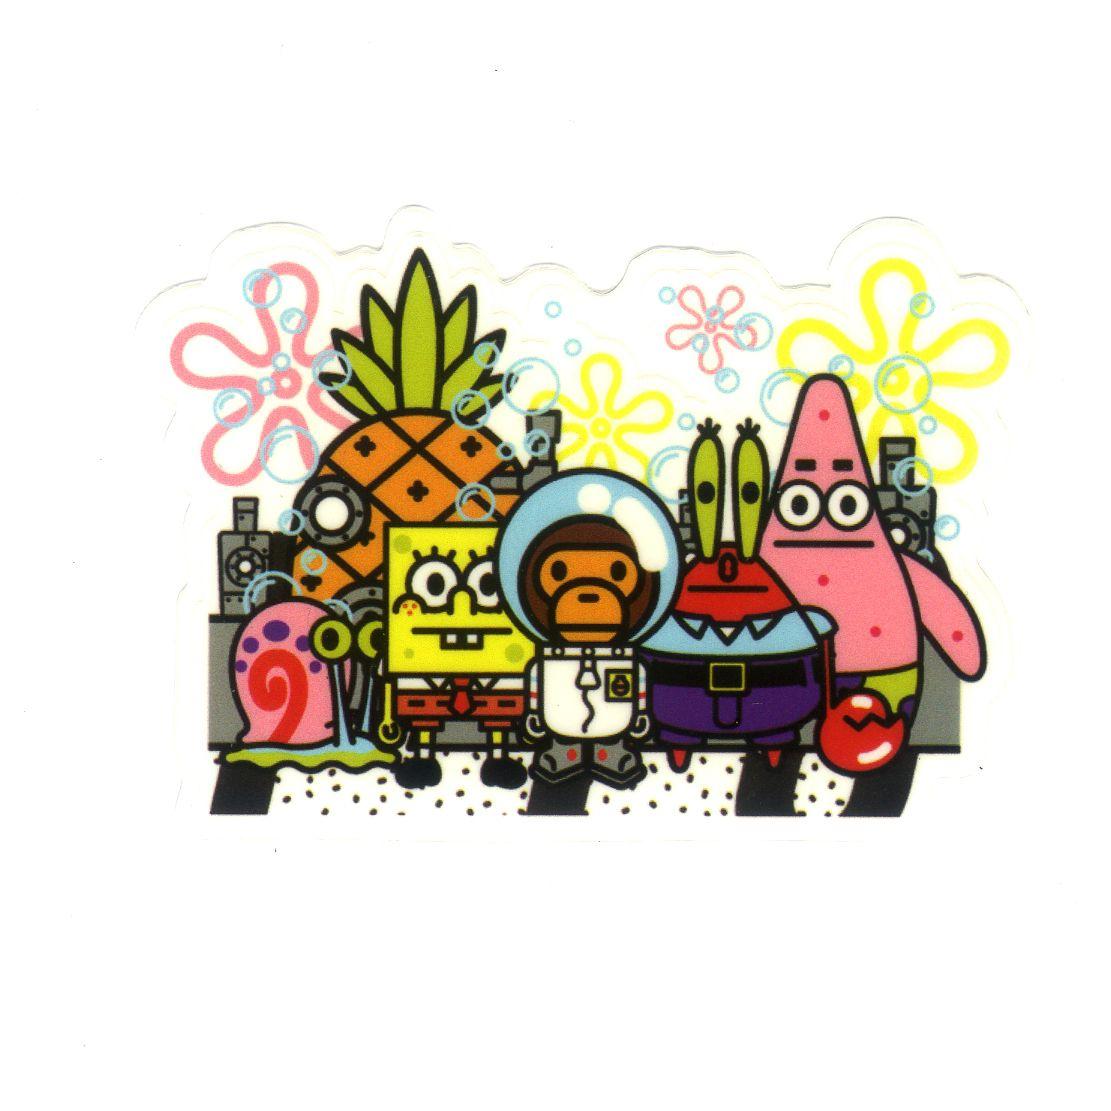 Baby Milo x Spongebob and friends, Width 8 cm, decal sticker